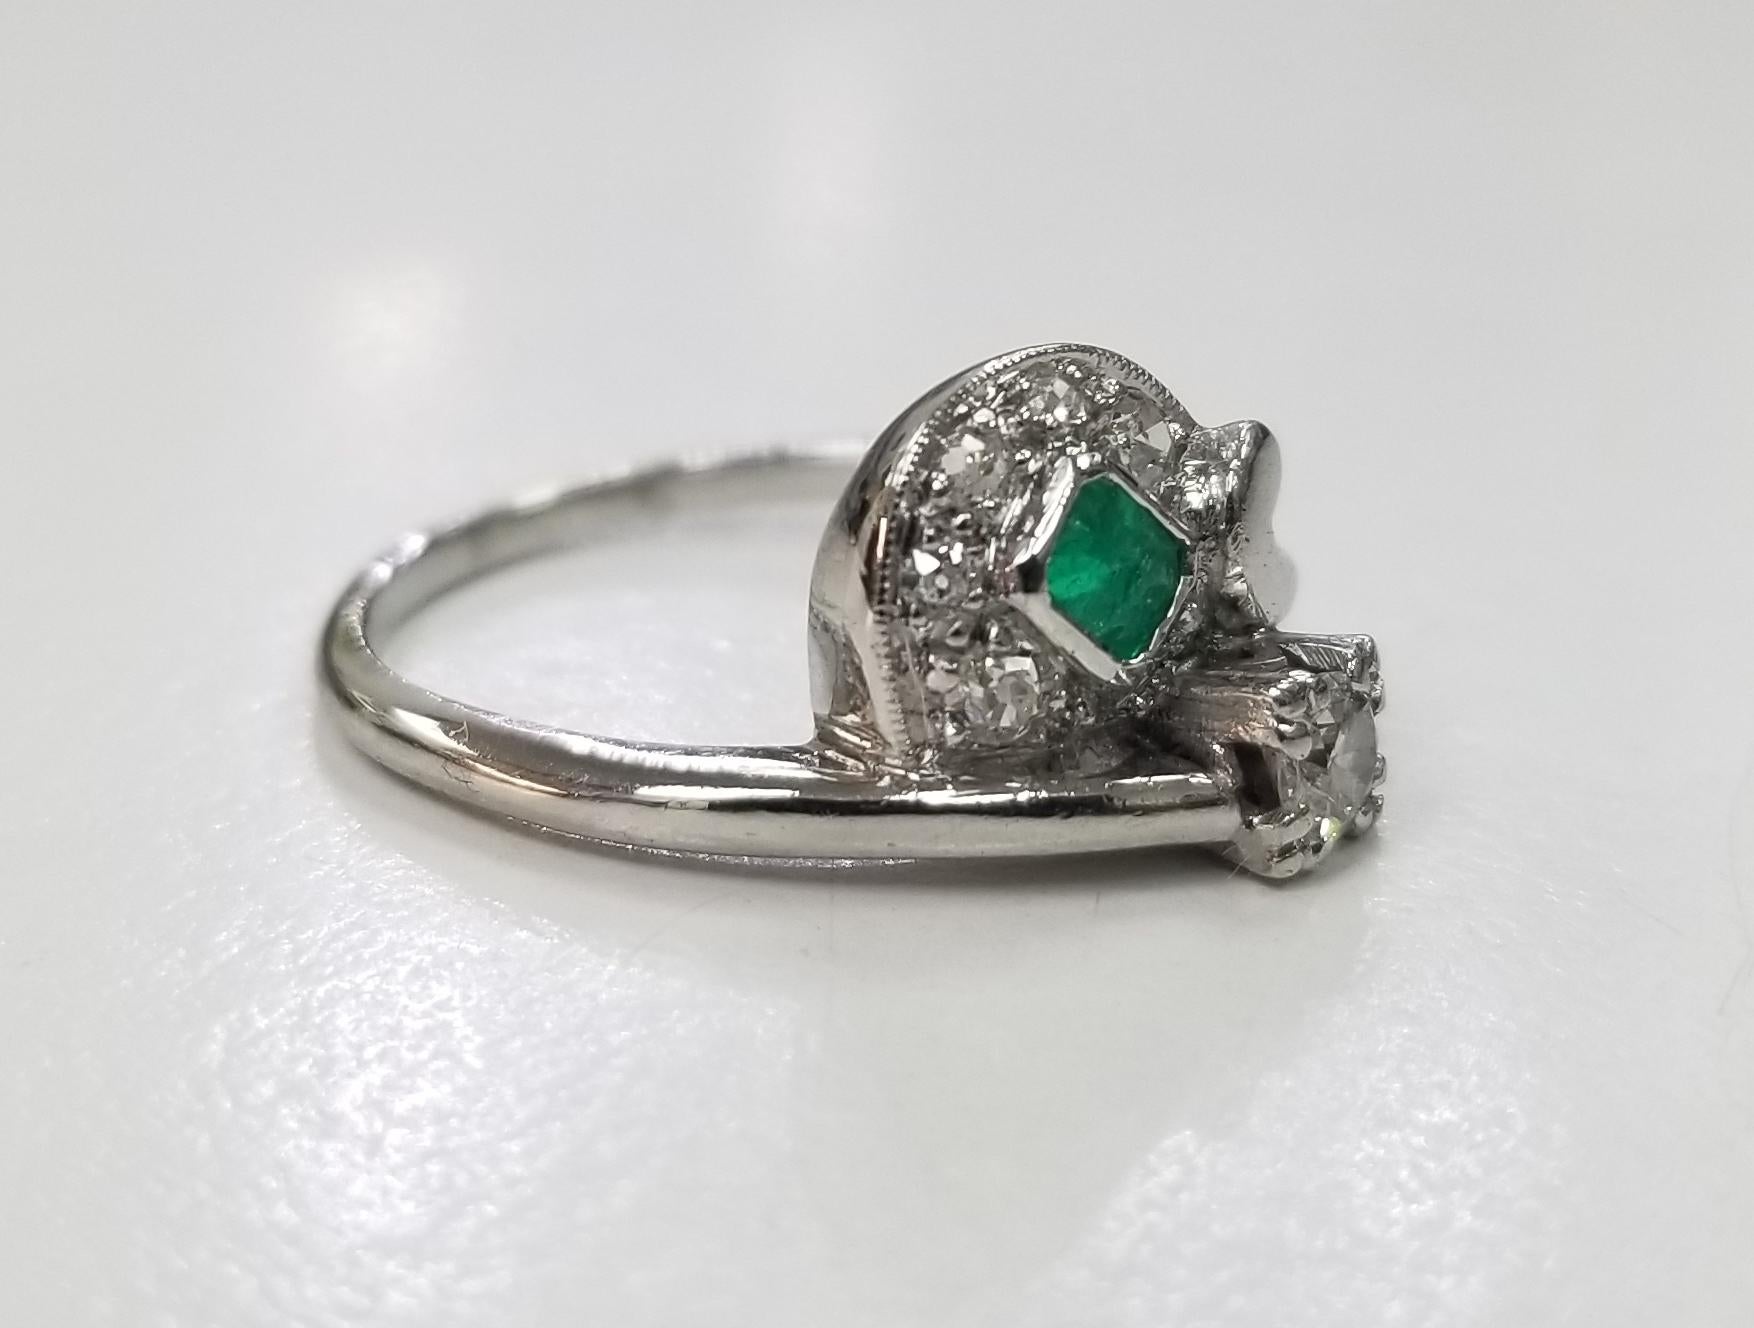 Platin  smaragd und Diamant-Ring, mit 1 Smaragd mit einem Gewicht von .25pts. und 6 runde Diamanten von sehr feiner Qualität mit einem Gewicht von .32pts. Ringgröße ist 6 und kann kostenlos auf die Größe angepasst werden.